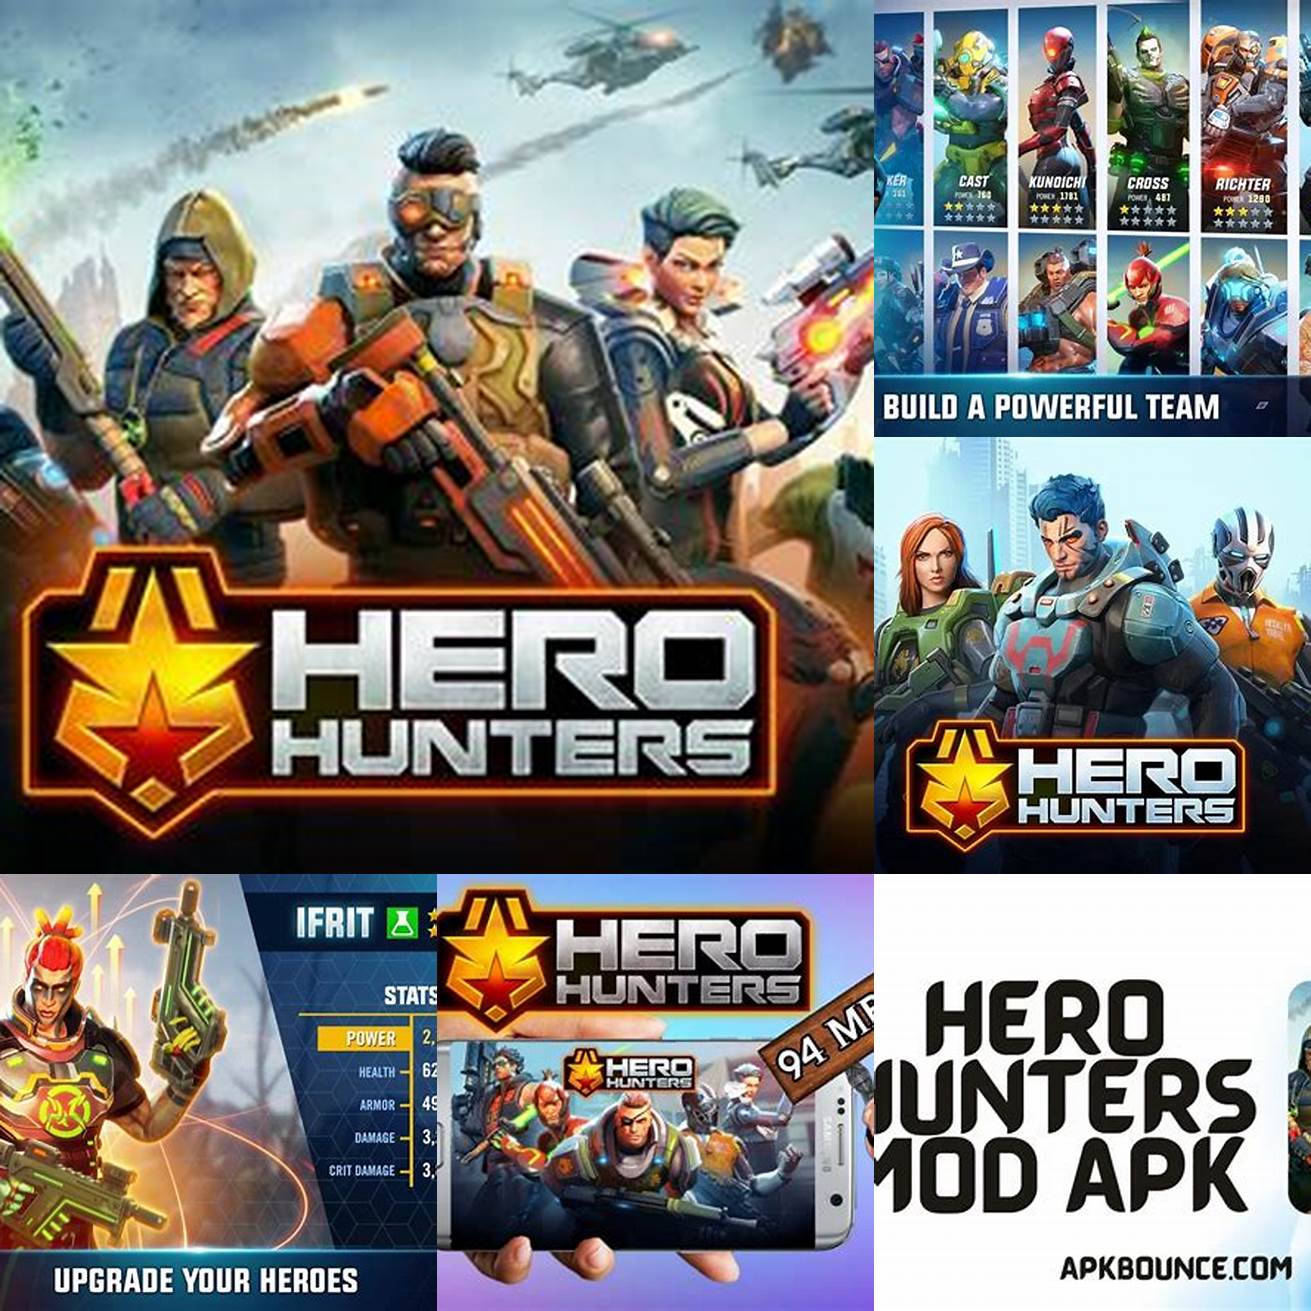 Langkah 1 Unduh Hero Hunters Mod APK dari situs web resmi atau tautan unduhan yang tersedia di internet